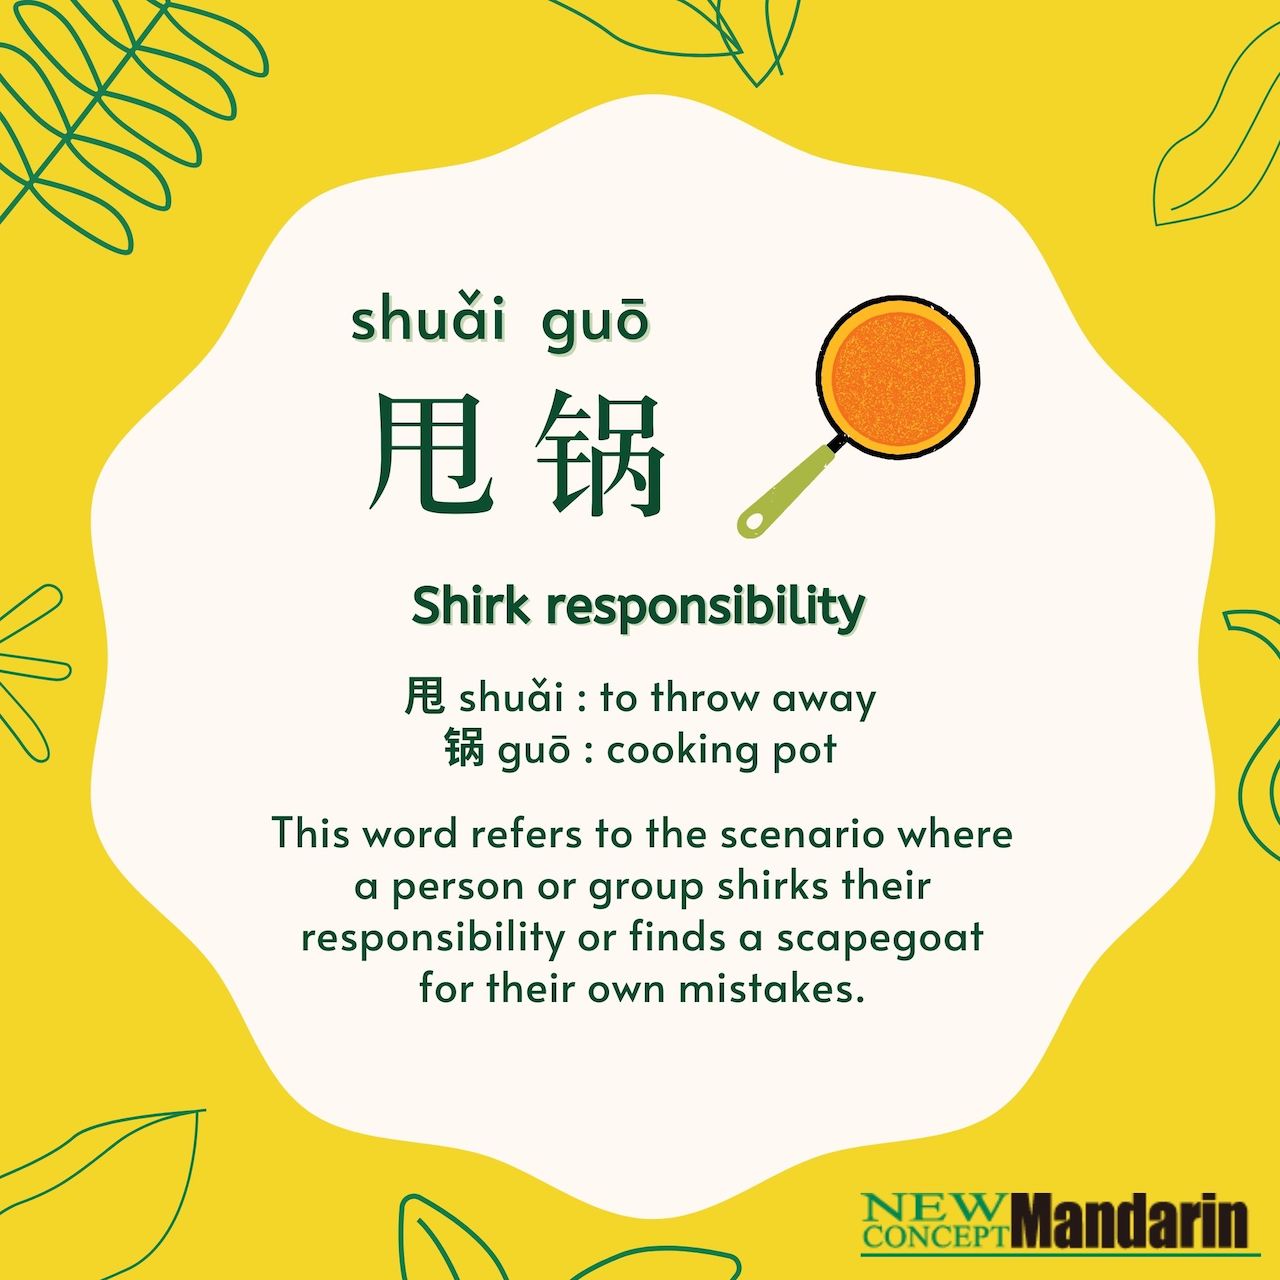 甩锅 shuǎi guō Shirk responsibility. 甩 shuǎi : to throw away, 锅 guō : cooking pot. This word refers to the scenario where a person or group shirks their responsibility or finds a scapegoat for their own mistakes. 